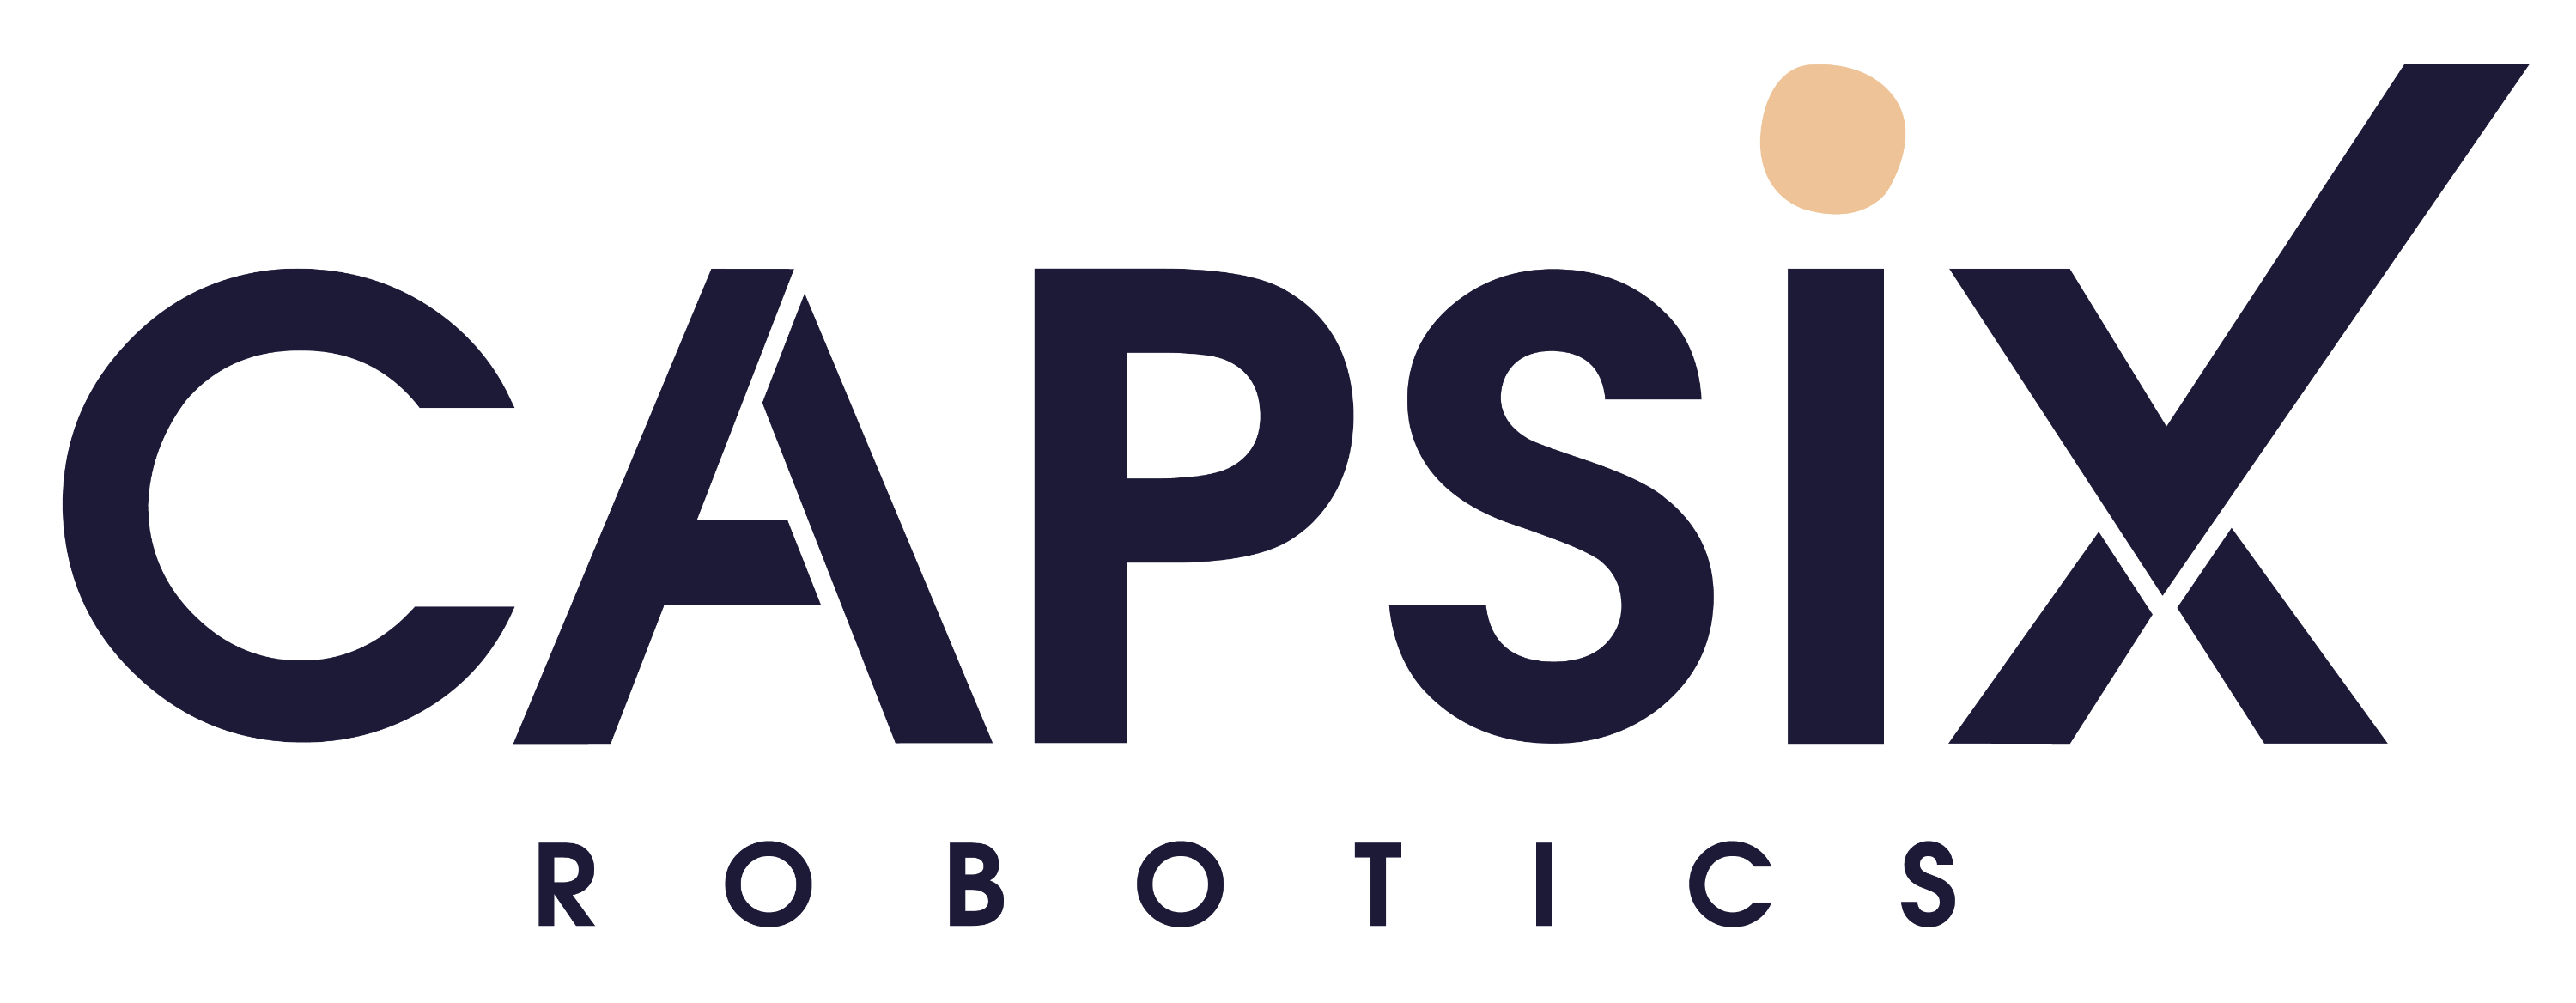 CAPSIX ROBOTICS